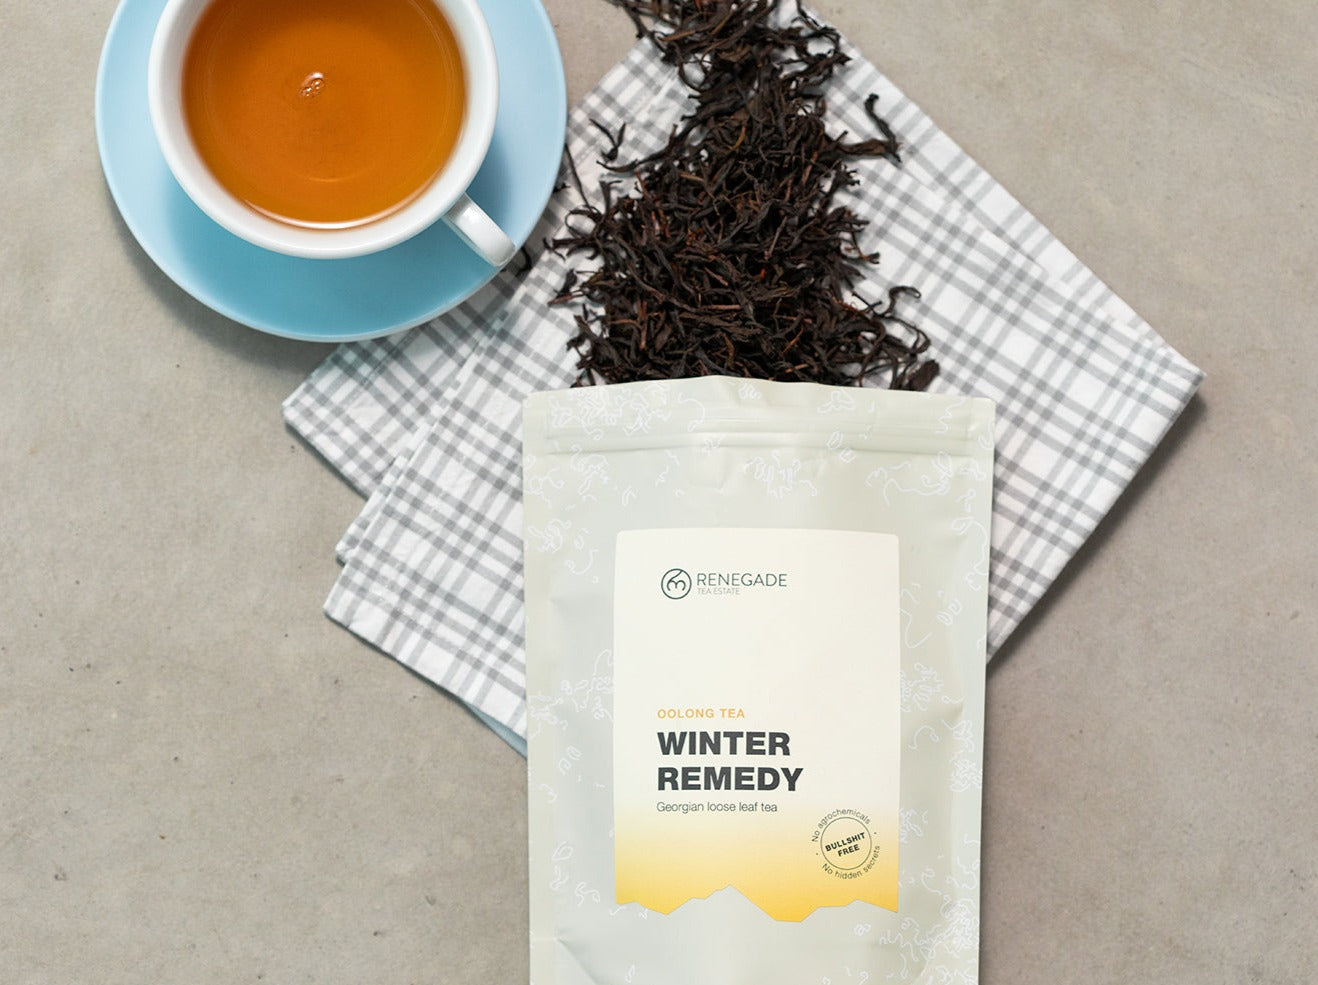 NEW Winter Remedy 150g - oolong tea